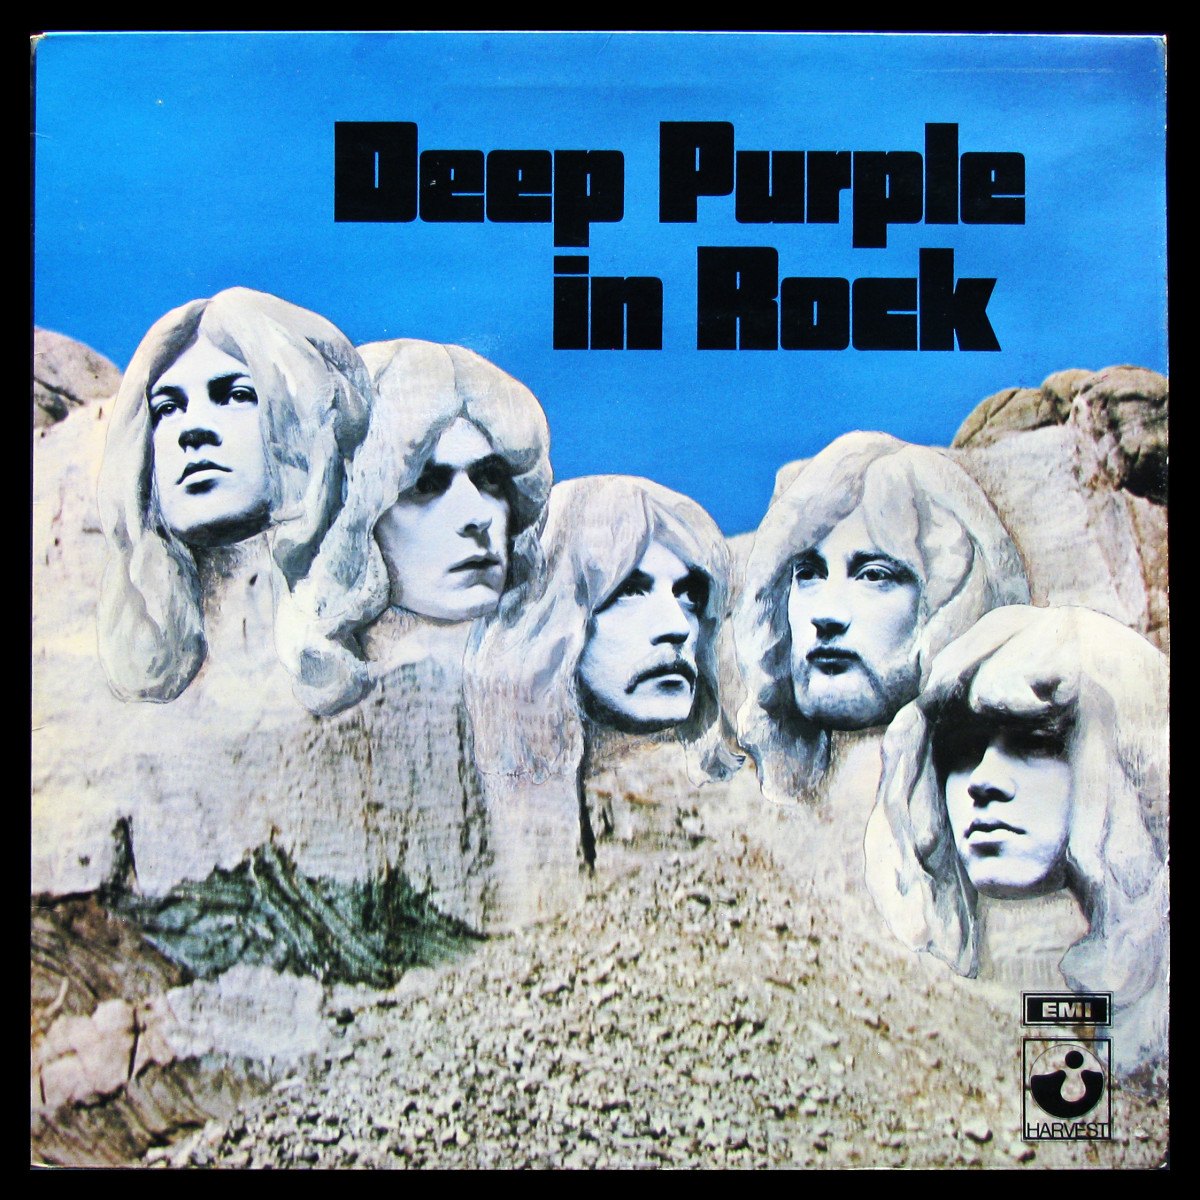 LP Deep Purple — In Rock фото